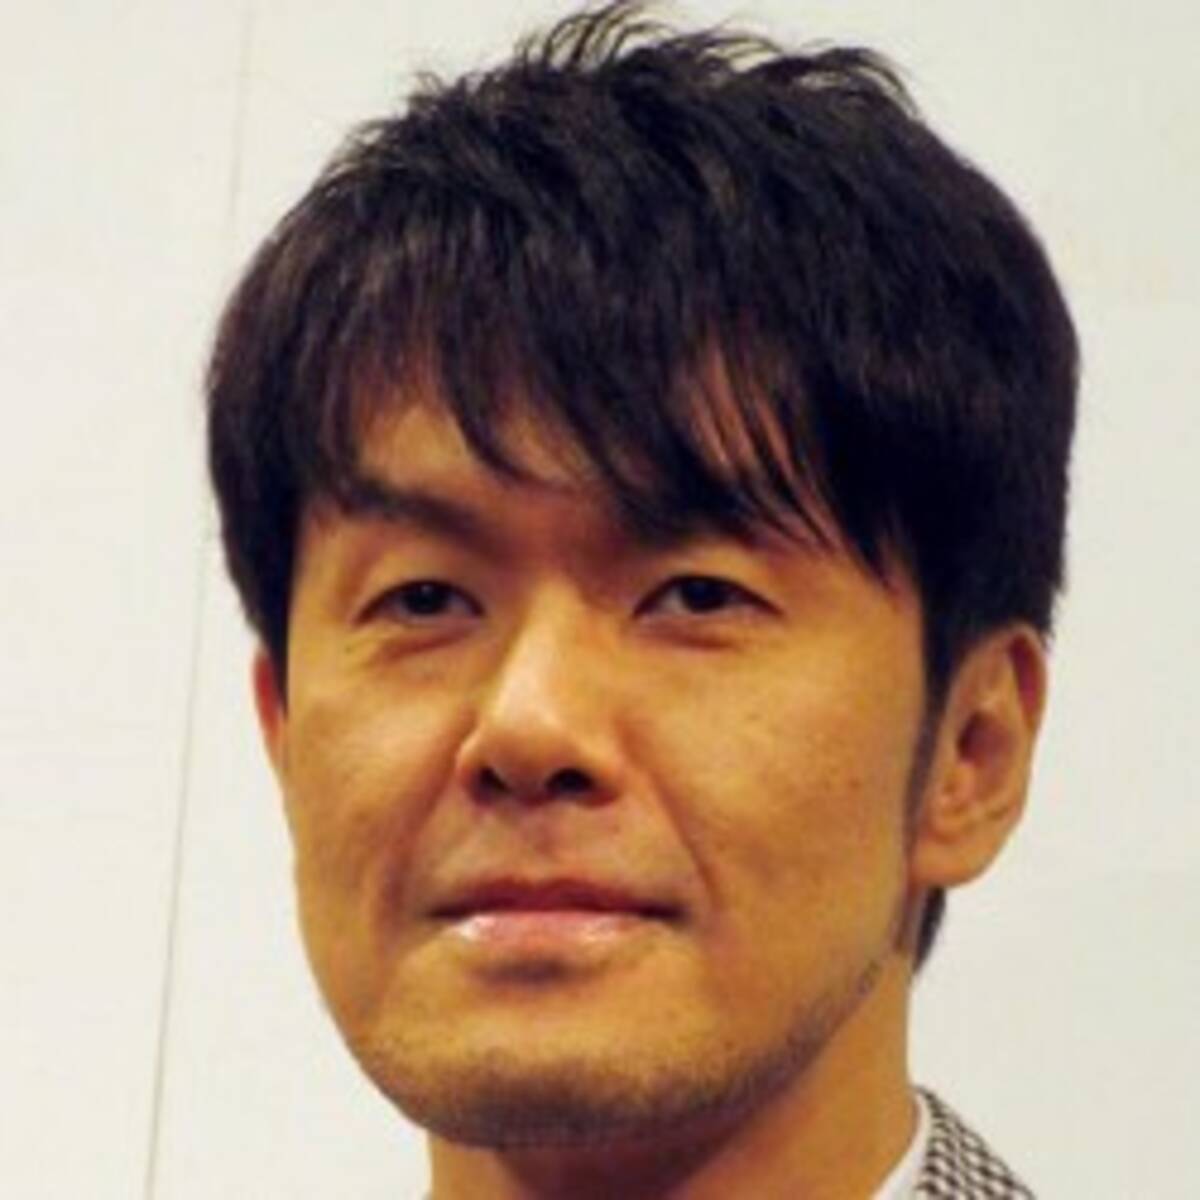 土田晃之 仕事につながらないからサッカーに興味失せた 発言に批判殺到 16年6月15日 エキサイトニュース